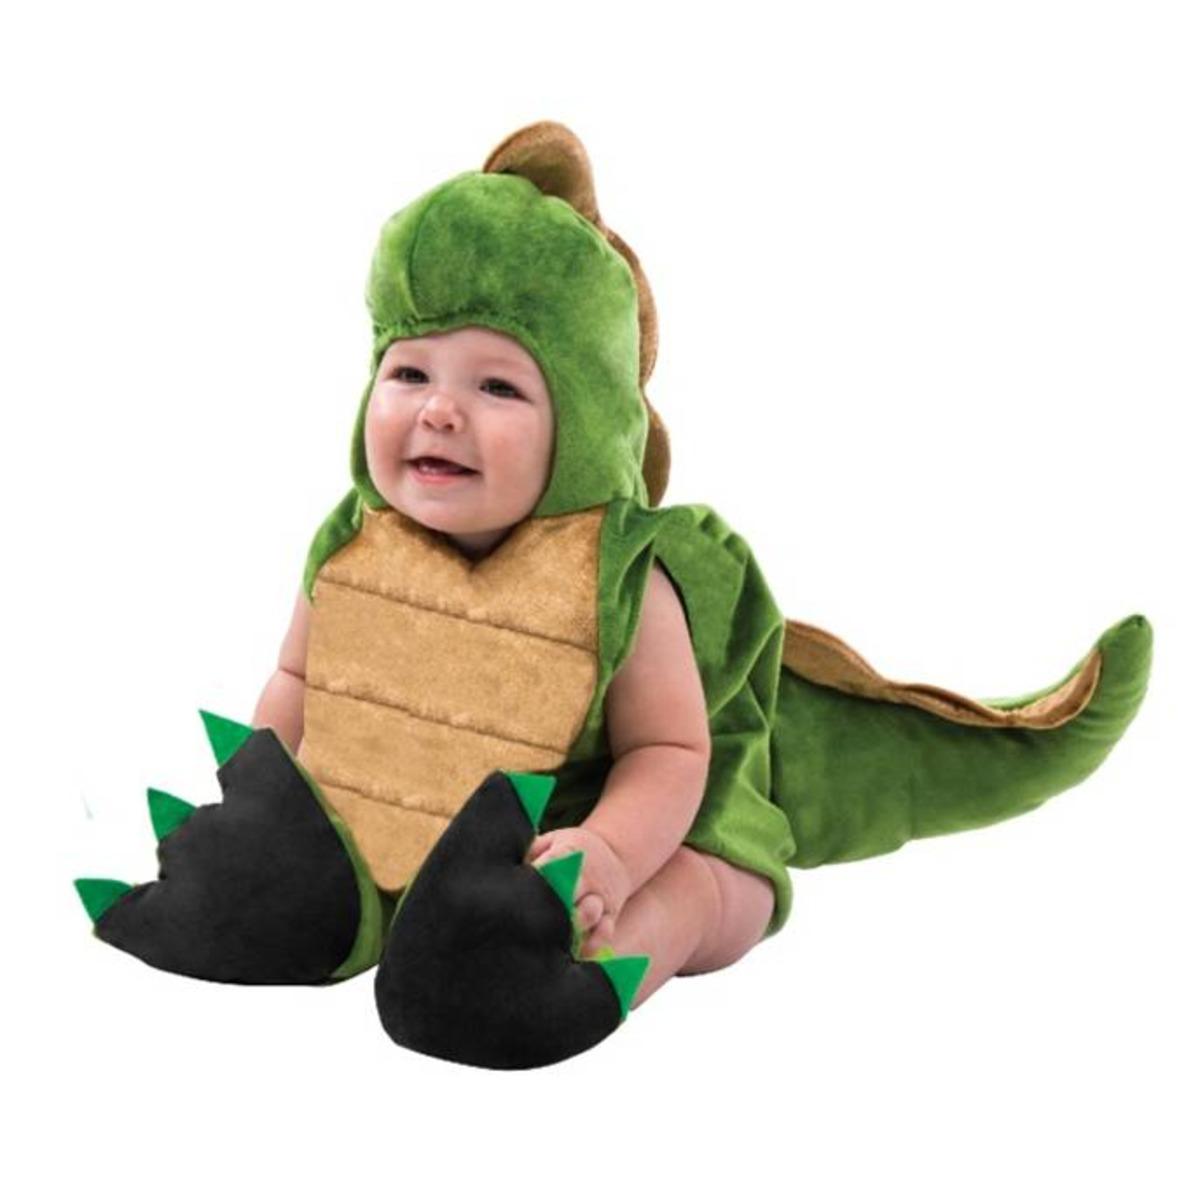 Déguisement bébé modèle dragon - Taille 12 à 24 mois - Vert, Marron